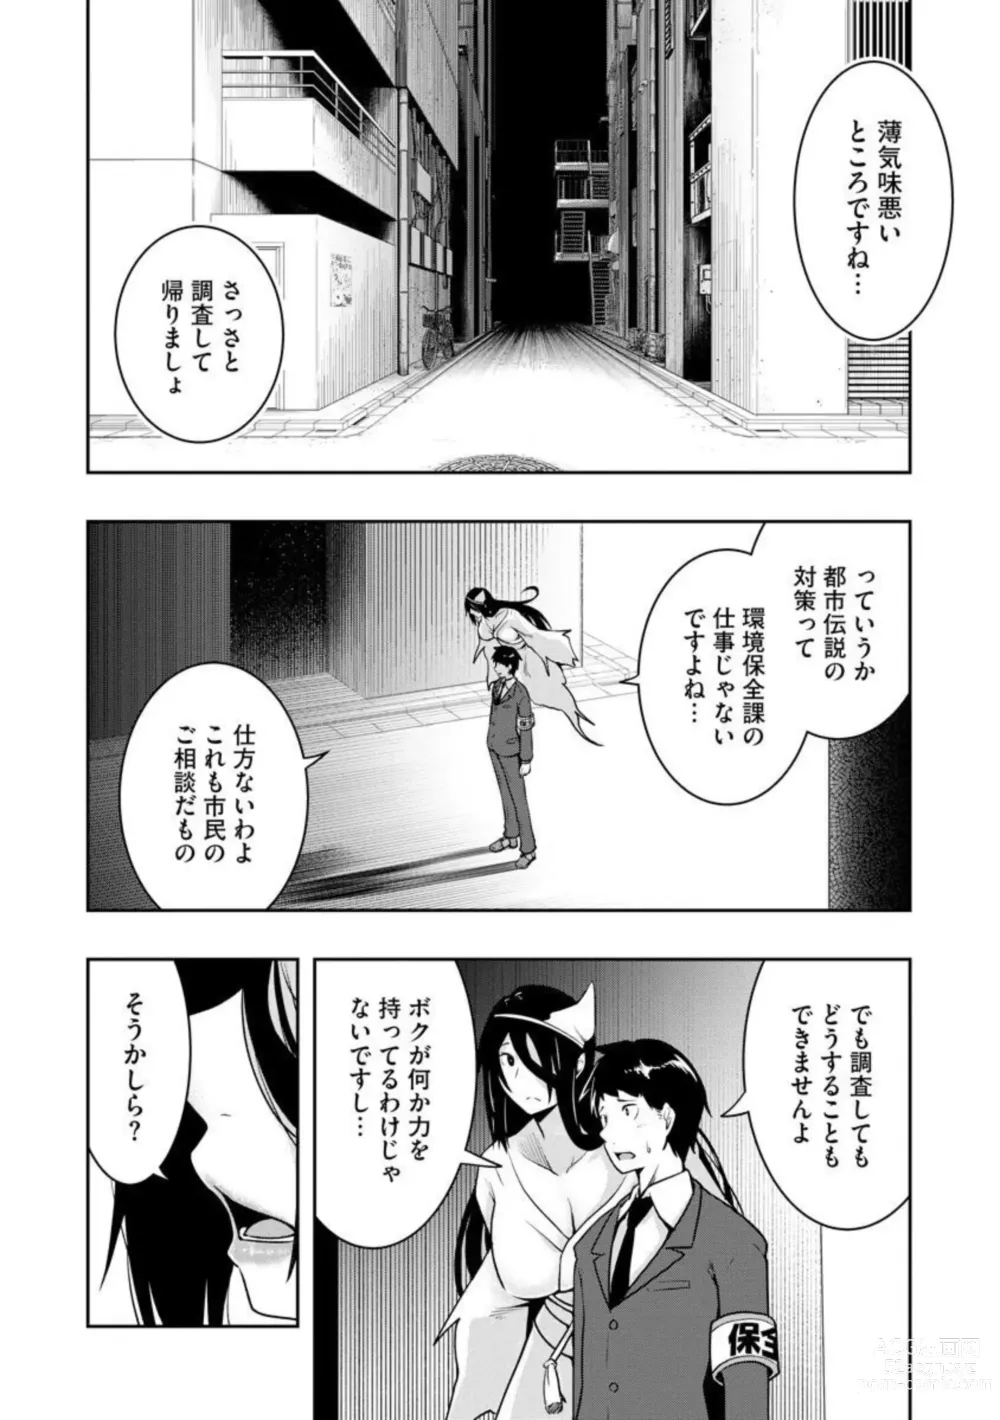 Page 9 of manga Kai 淫 Anata no Mono de Ikasetekudasai … Hontōha Yarashī Toshi Densetsu 1